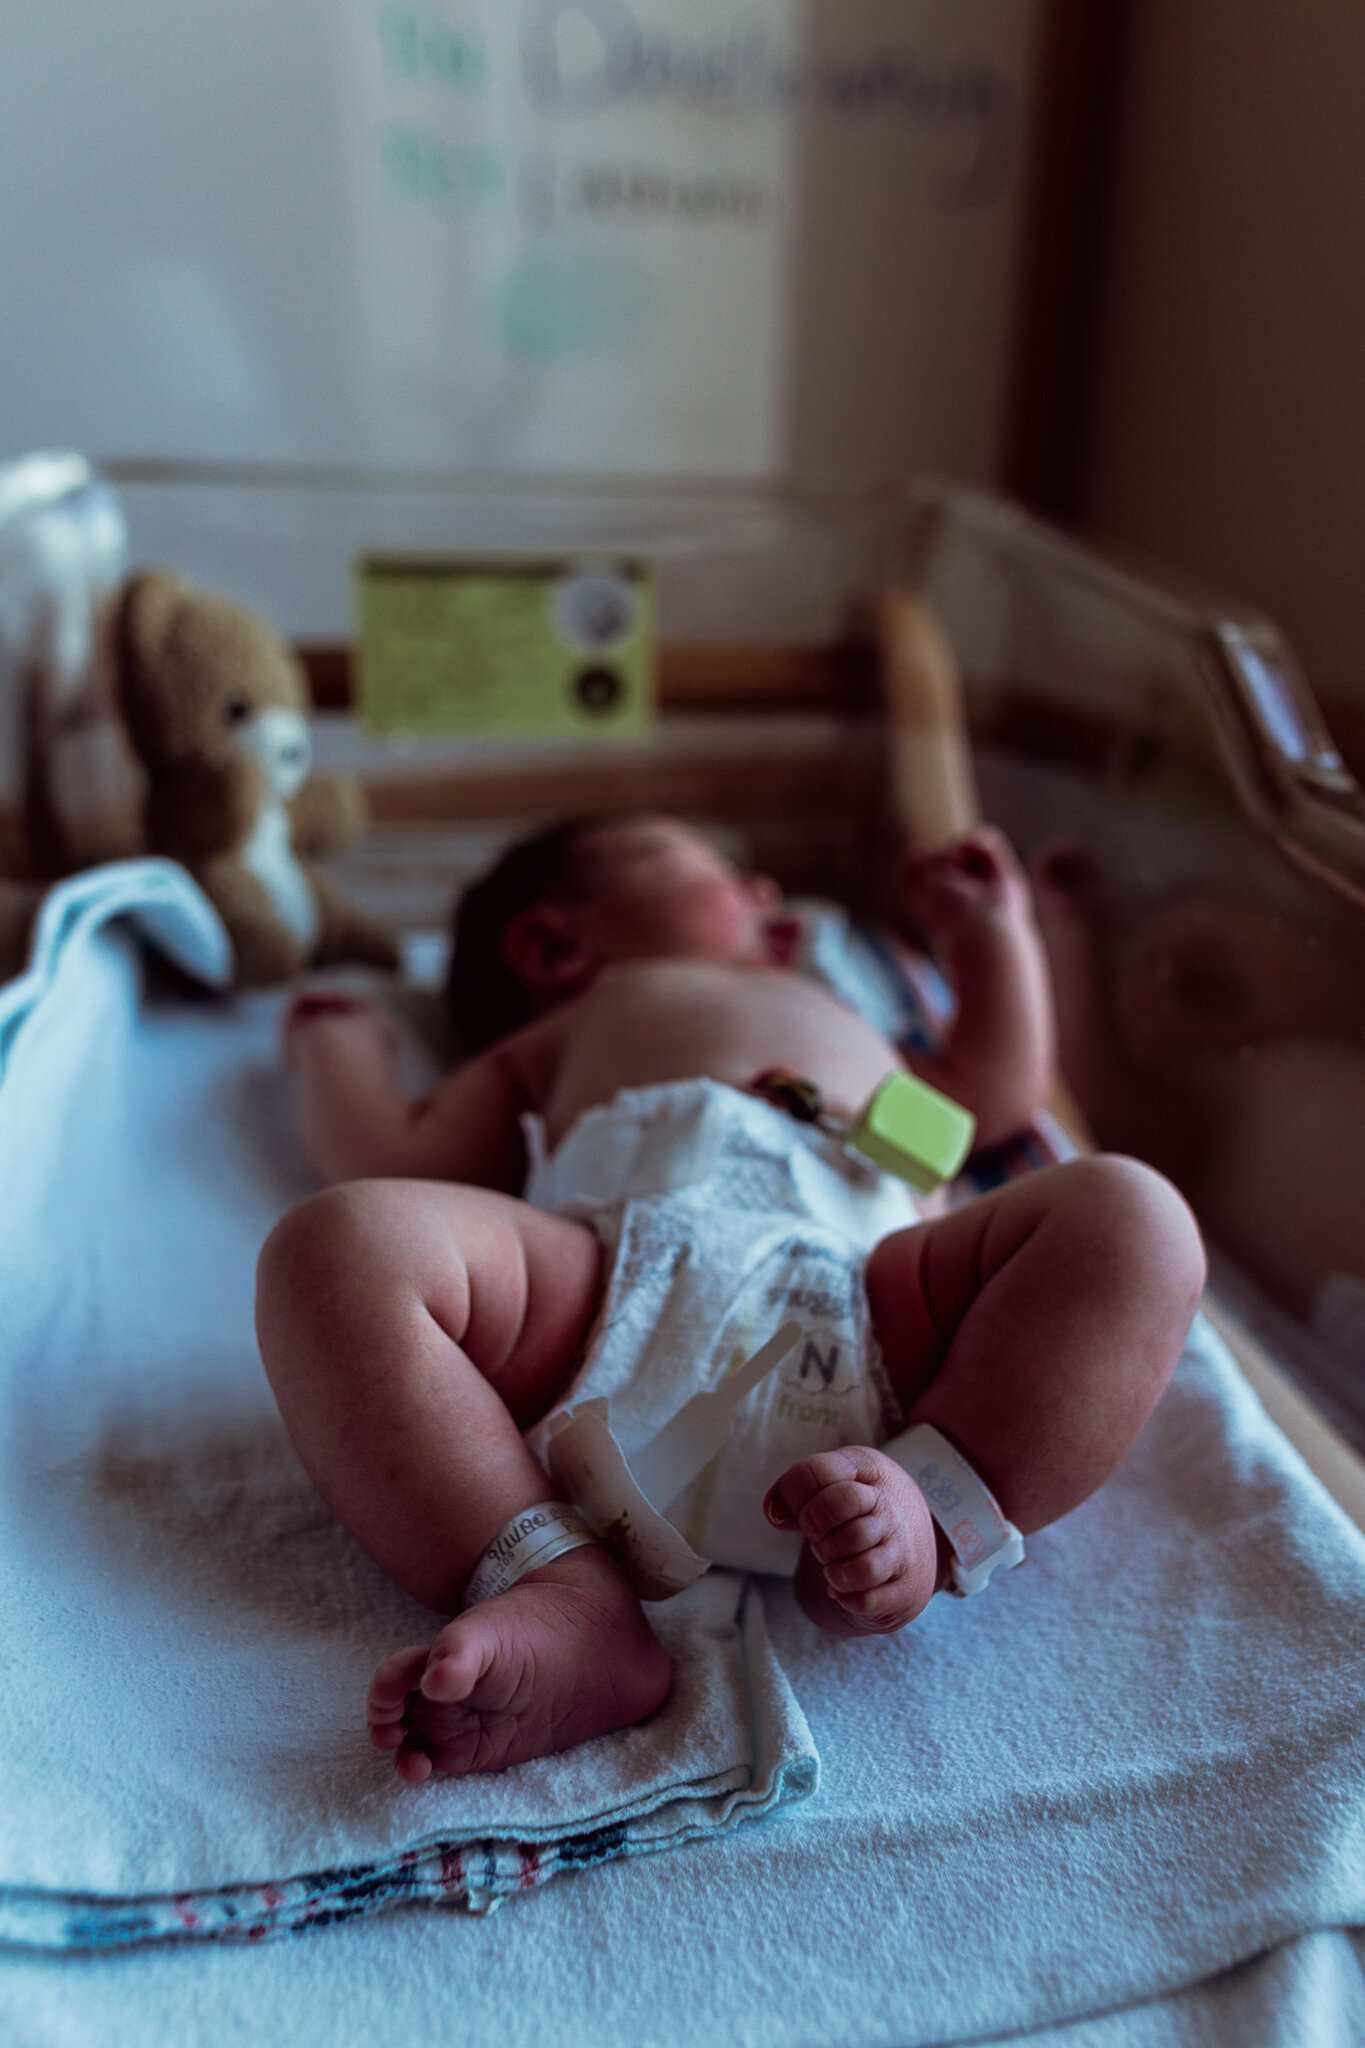 cesarean-birth-postpartum-maggie-williams-4193.jpg